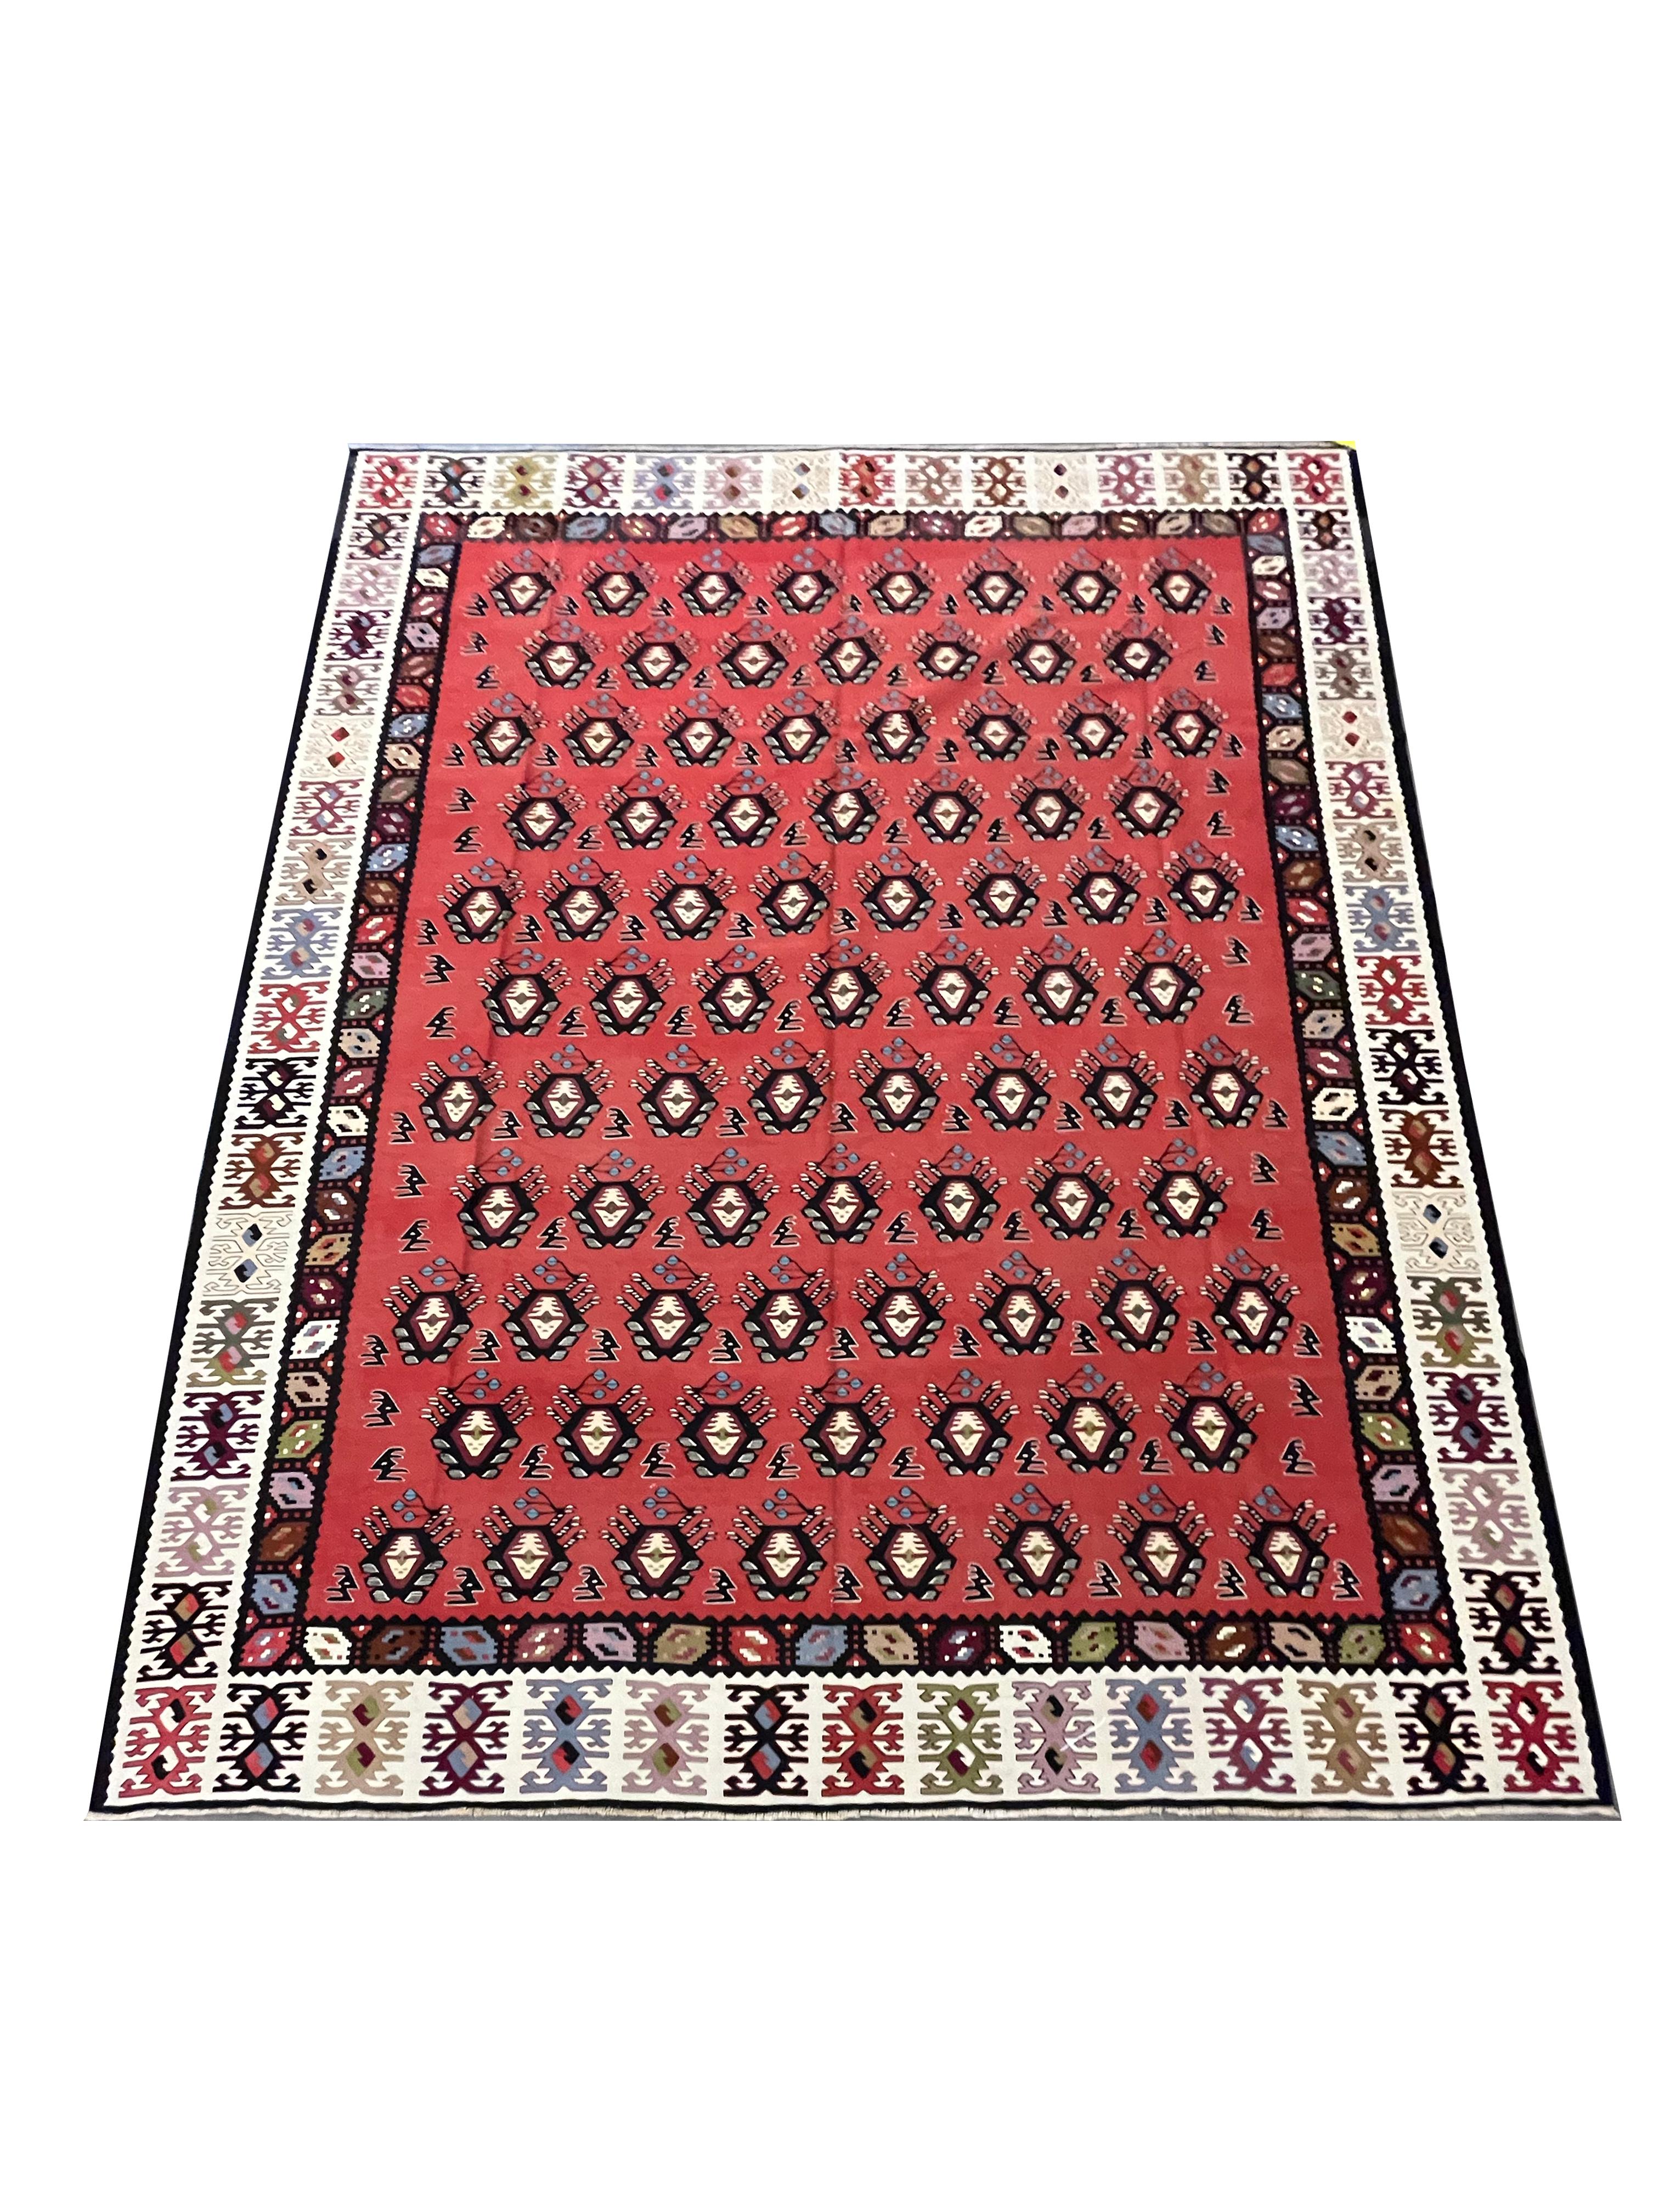 Ce kilim rouge vif est un tapis traditionnel tissé à plat à la main vers 1900. Le motif présente un dessin géométrique tissé dans des accents audacieux de noir, de vert et de bleu sur un magnifique fond rouge. Le motif à rayures est accrocheur et